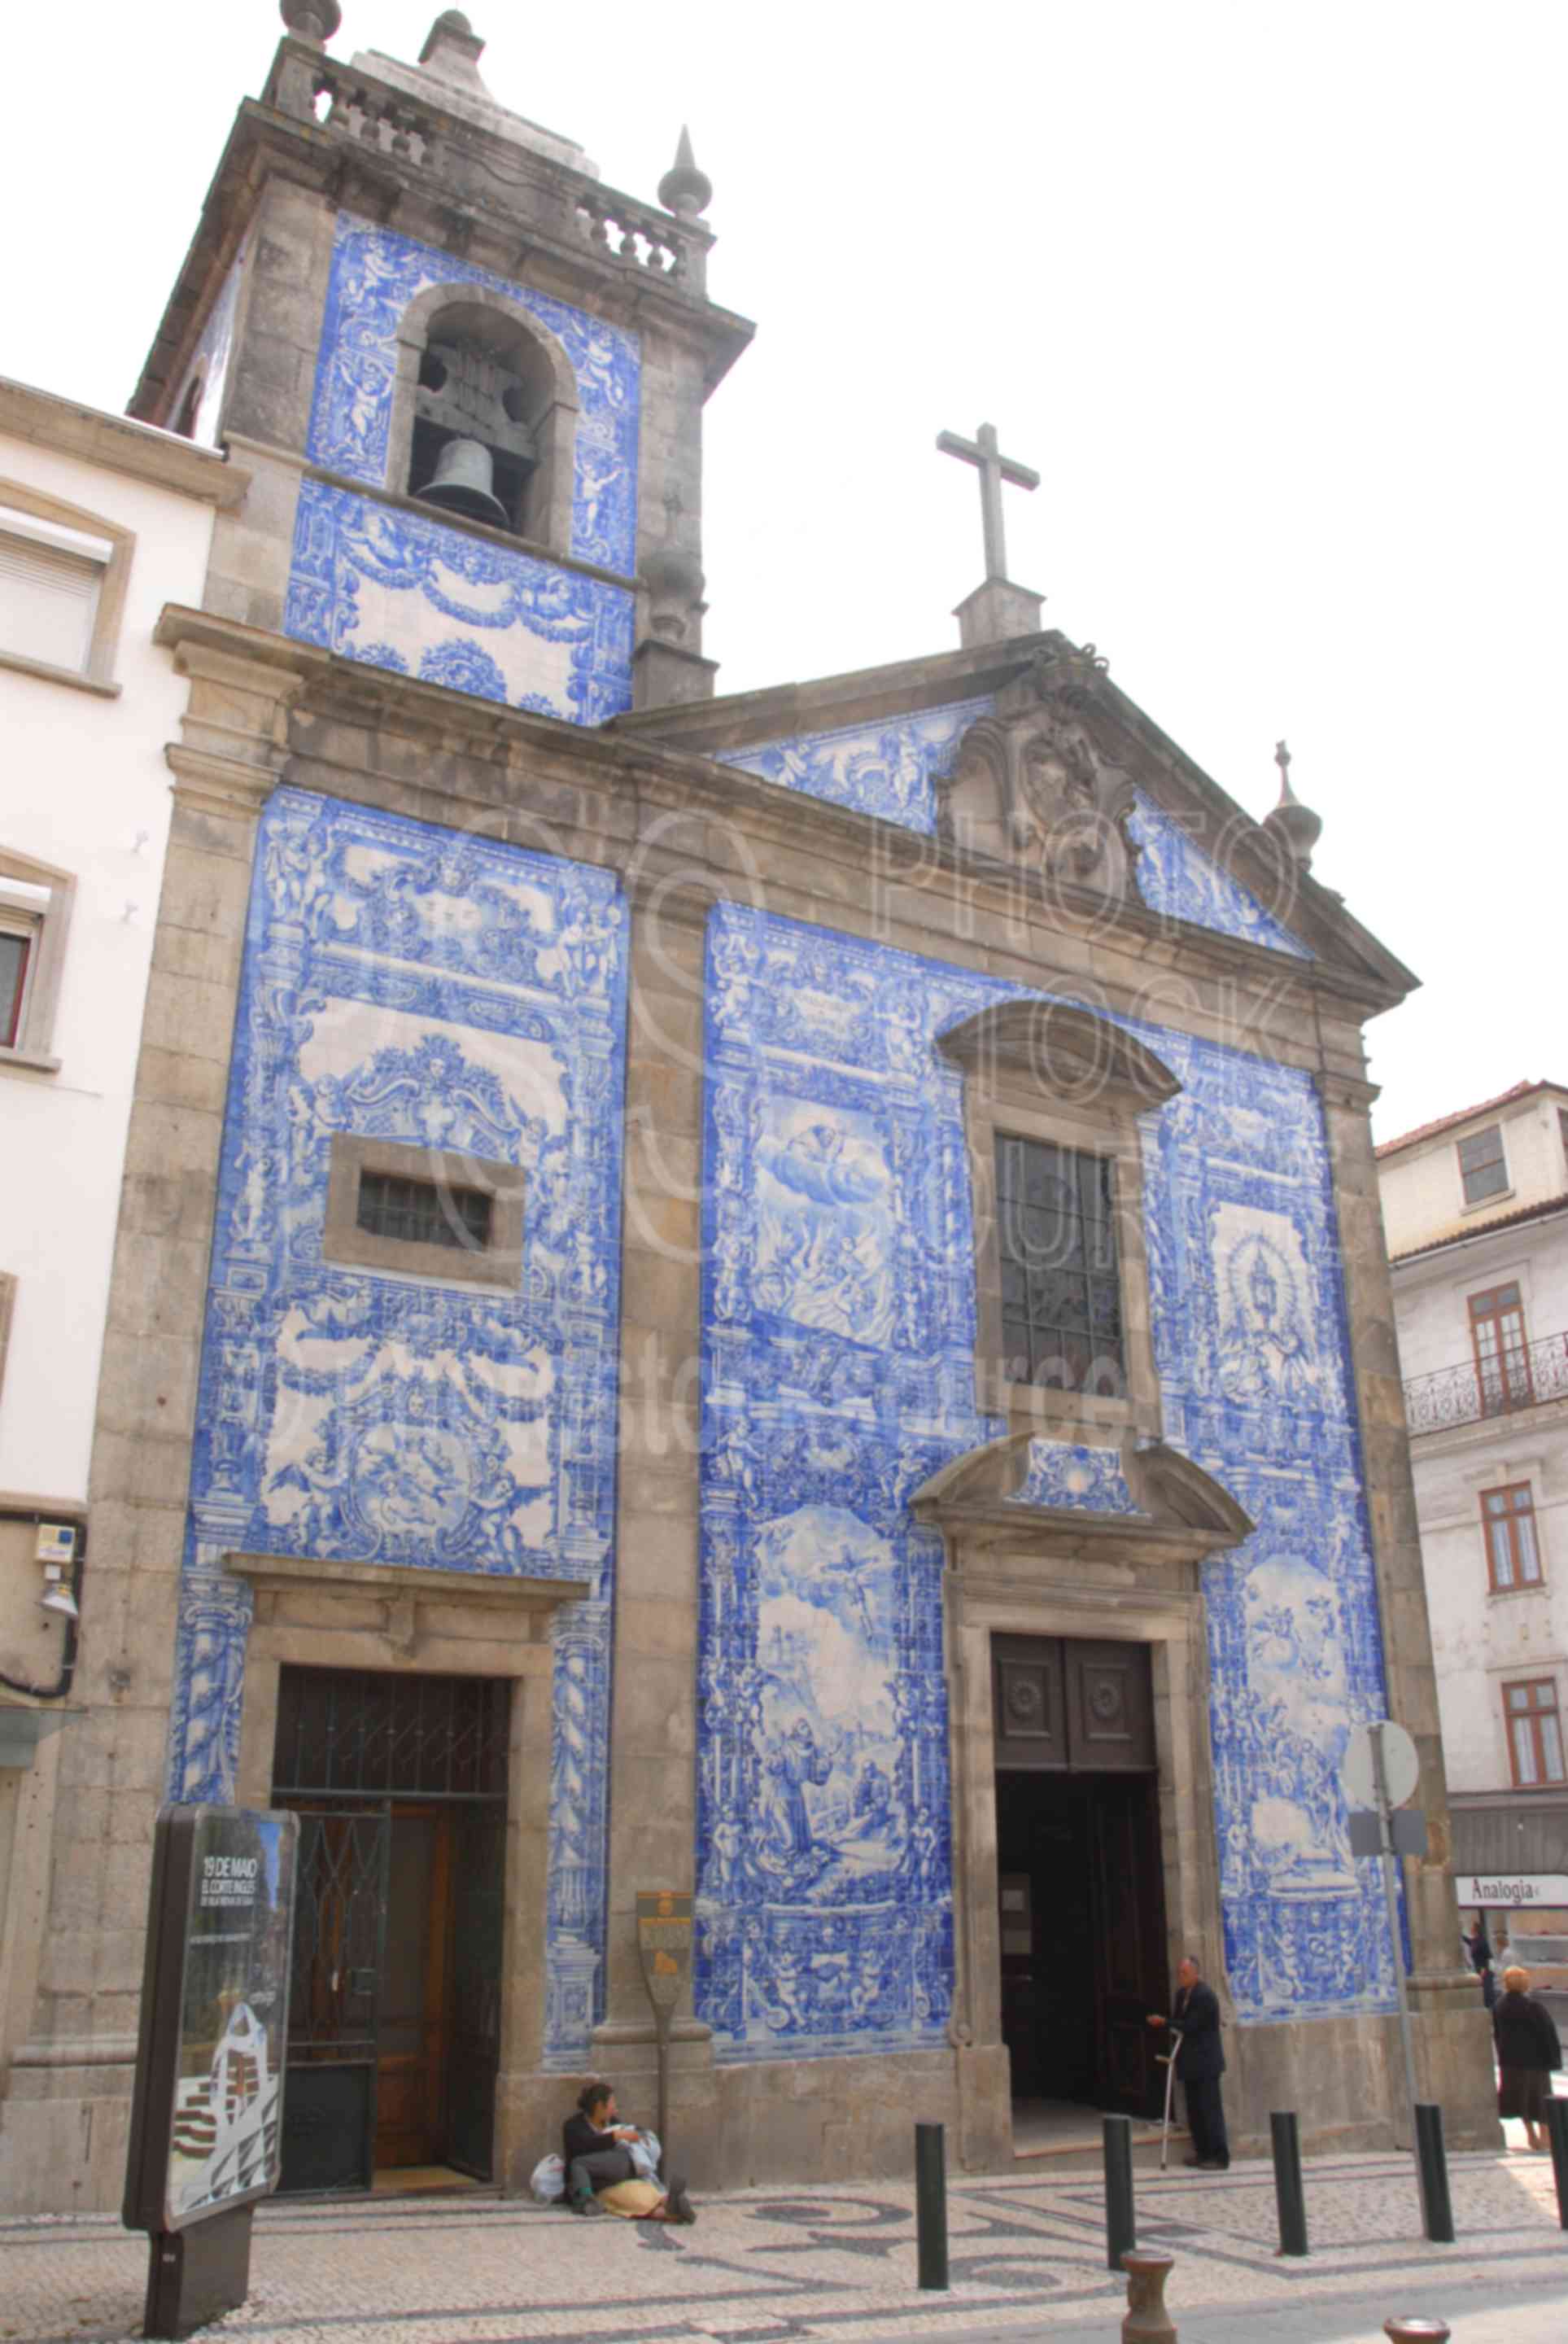 Capela das Almas,porto,azulejos,portugal churches,religion